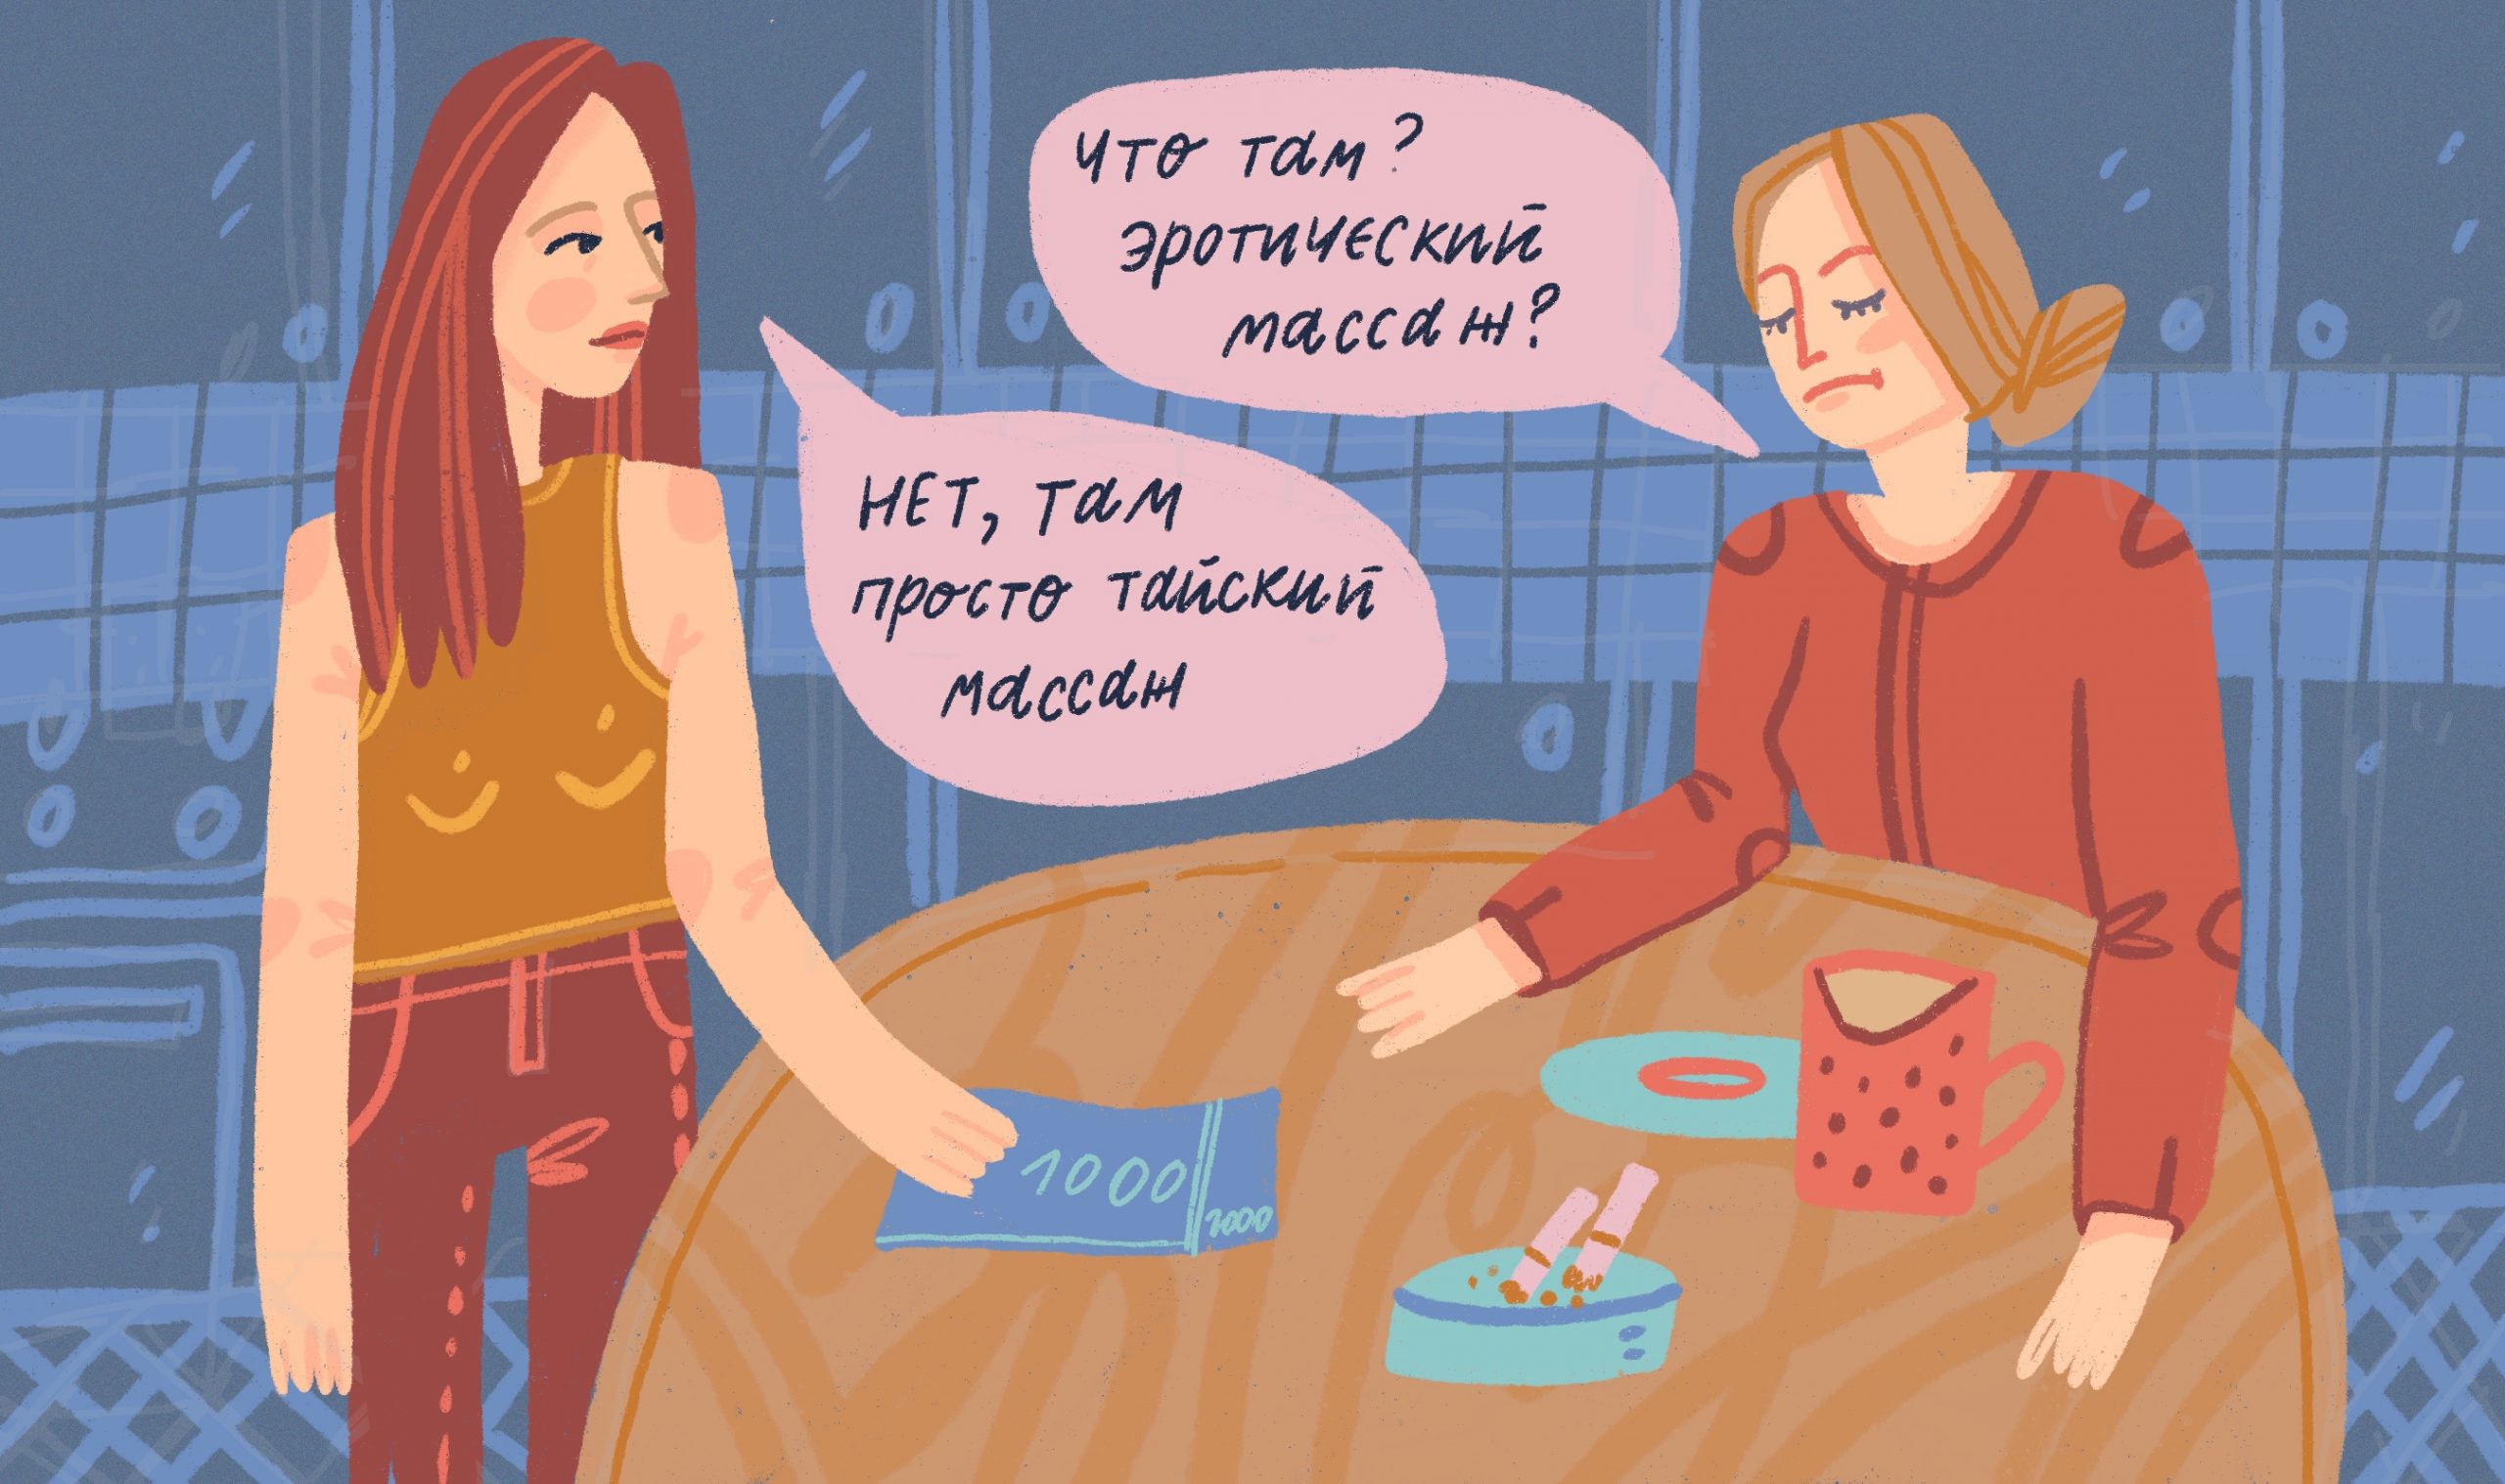 Эротический массаж для женщин. Частные объявления массажистов в Москве | МИР эроМАССАЖА